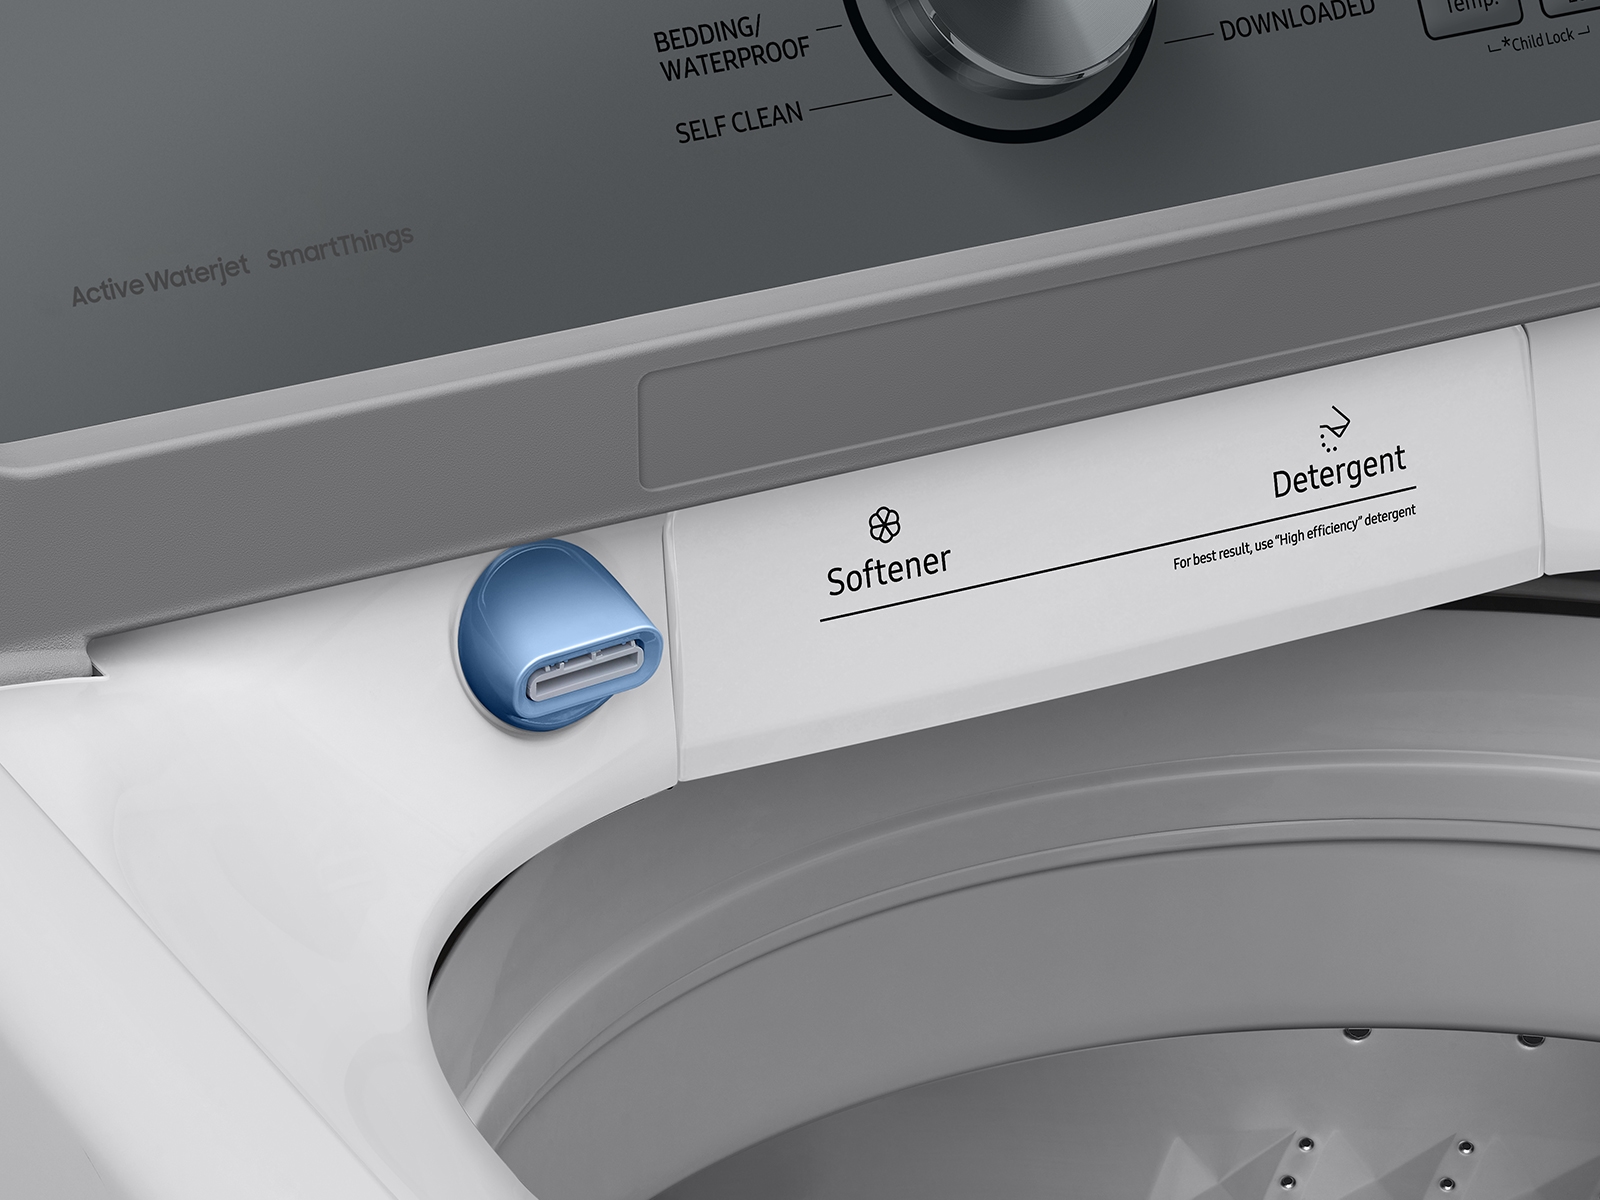 Samsung 4.7-cu ft High Efficiency Impeller Smart Top-Load Washer